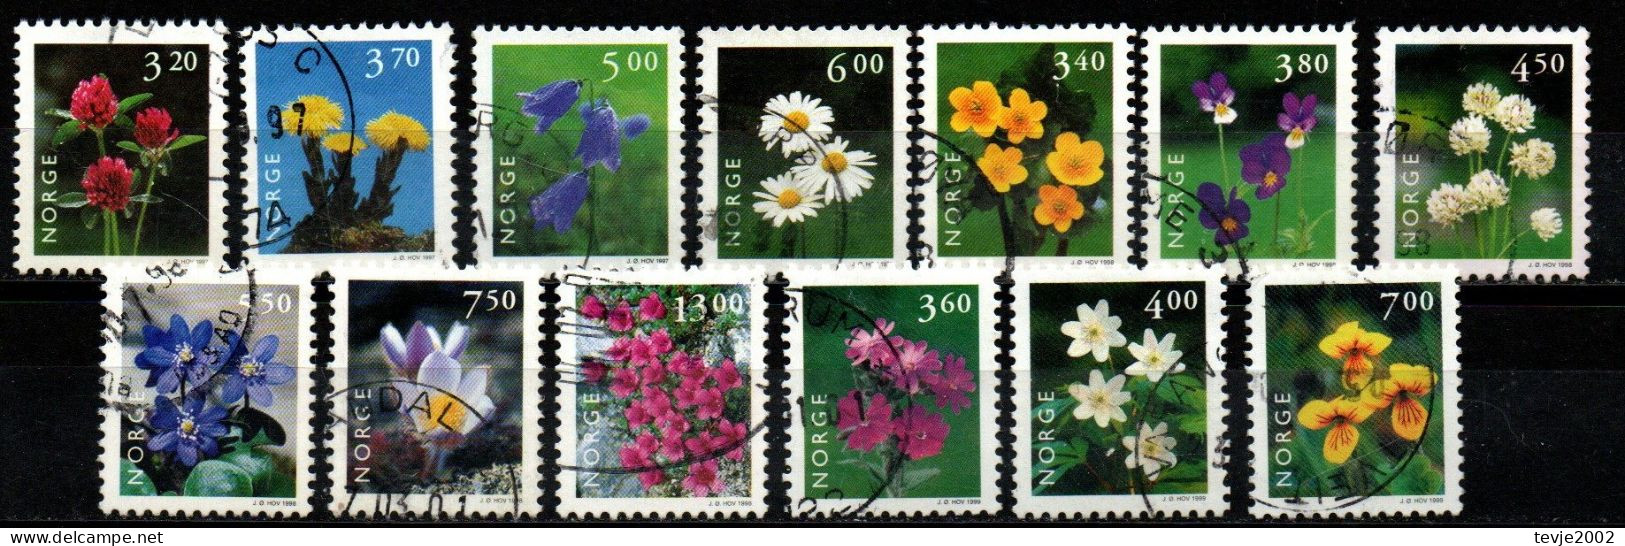 Norwegen Norge 1997 - 1999 - Freimarken Blumen - Gestempelt Used - Gebruikt